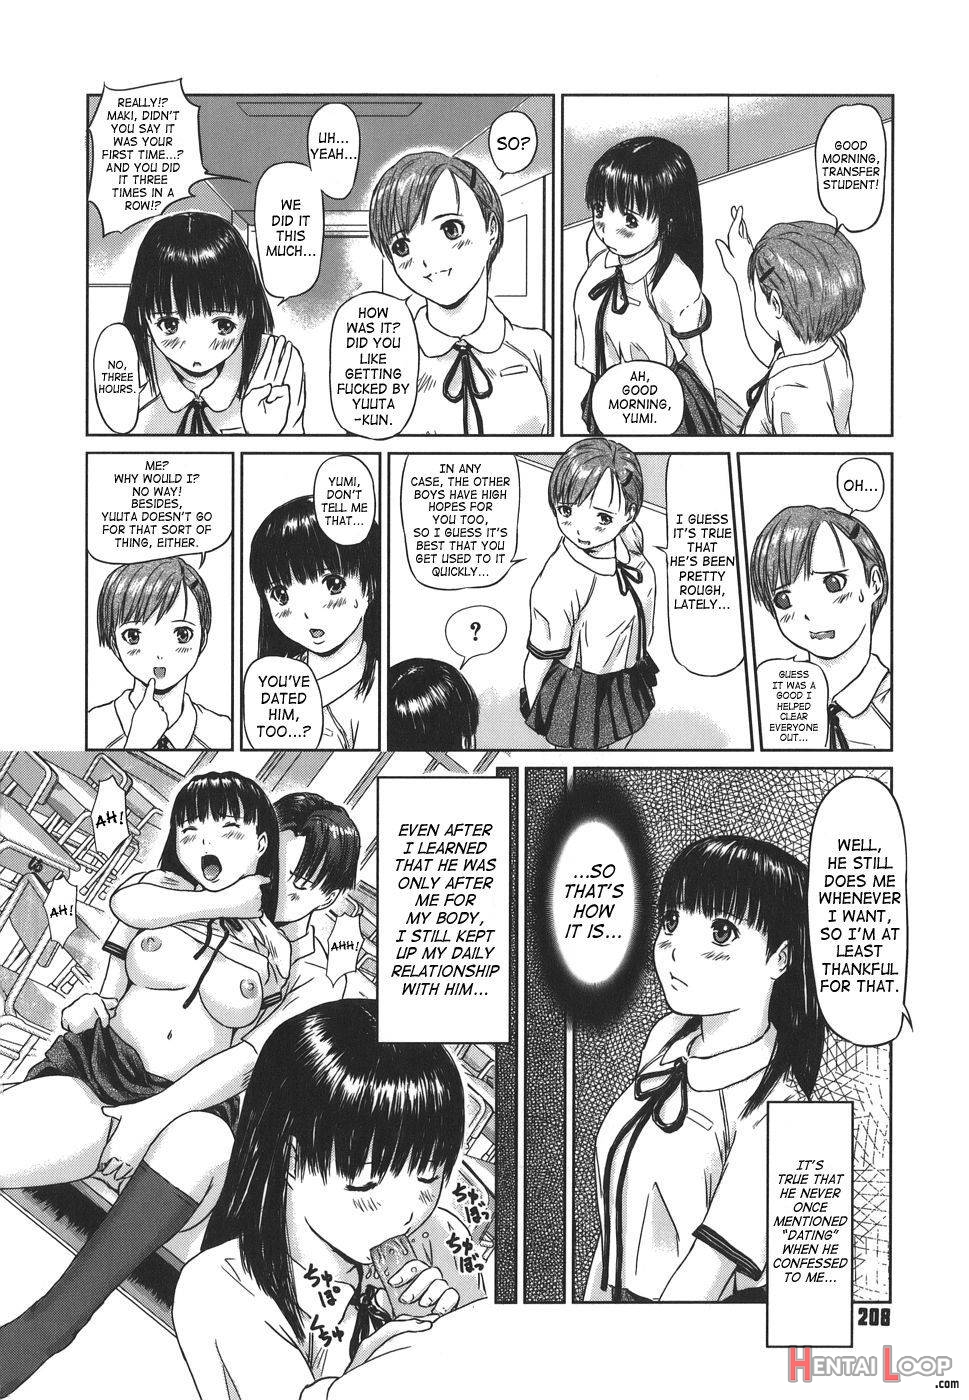 Somero! Tenkousei page 4